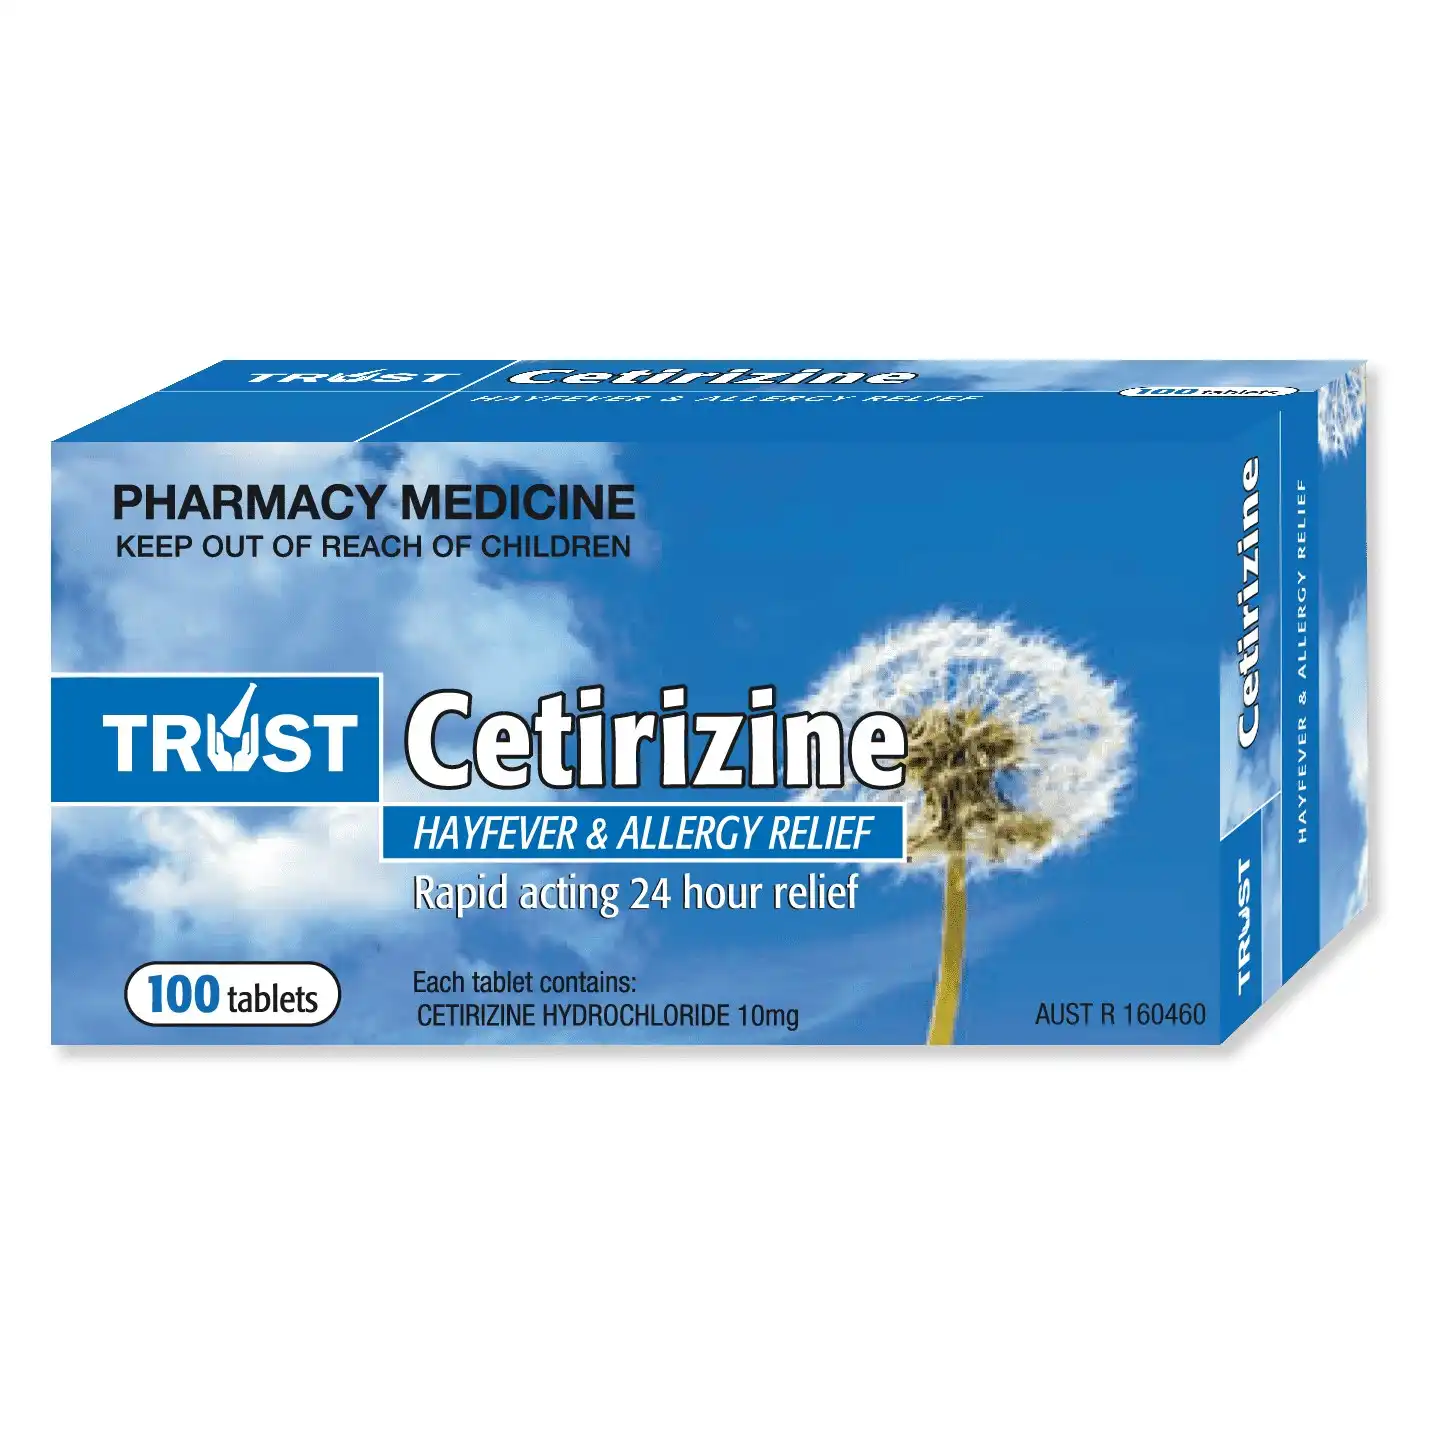 Trust Cetirizine 10mg 100 Tablets